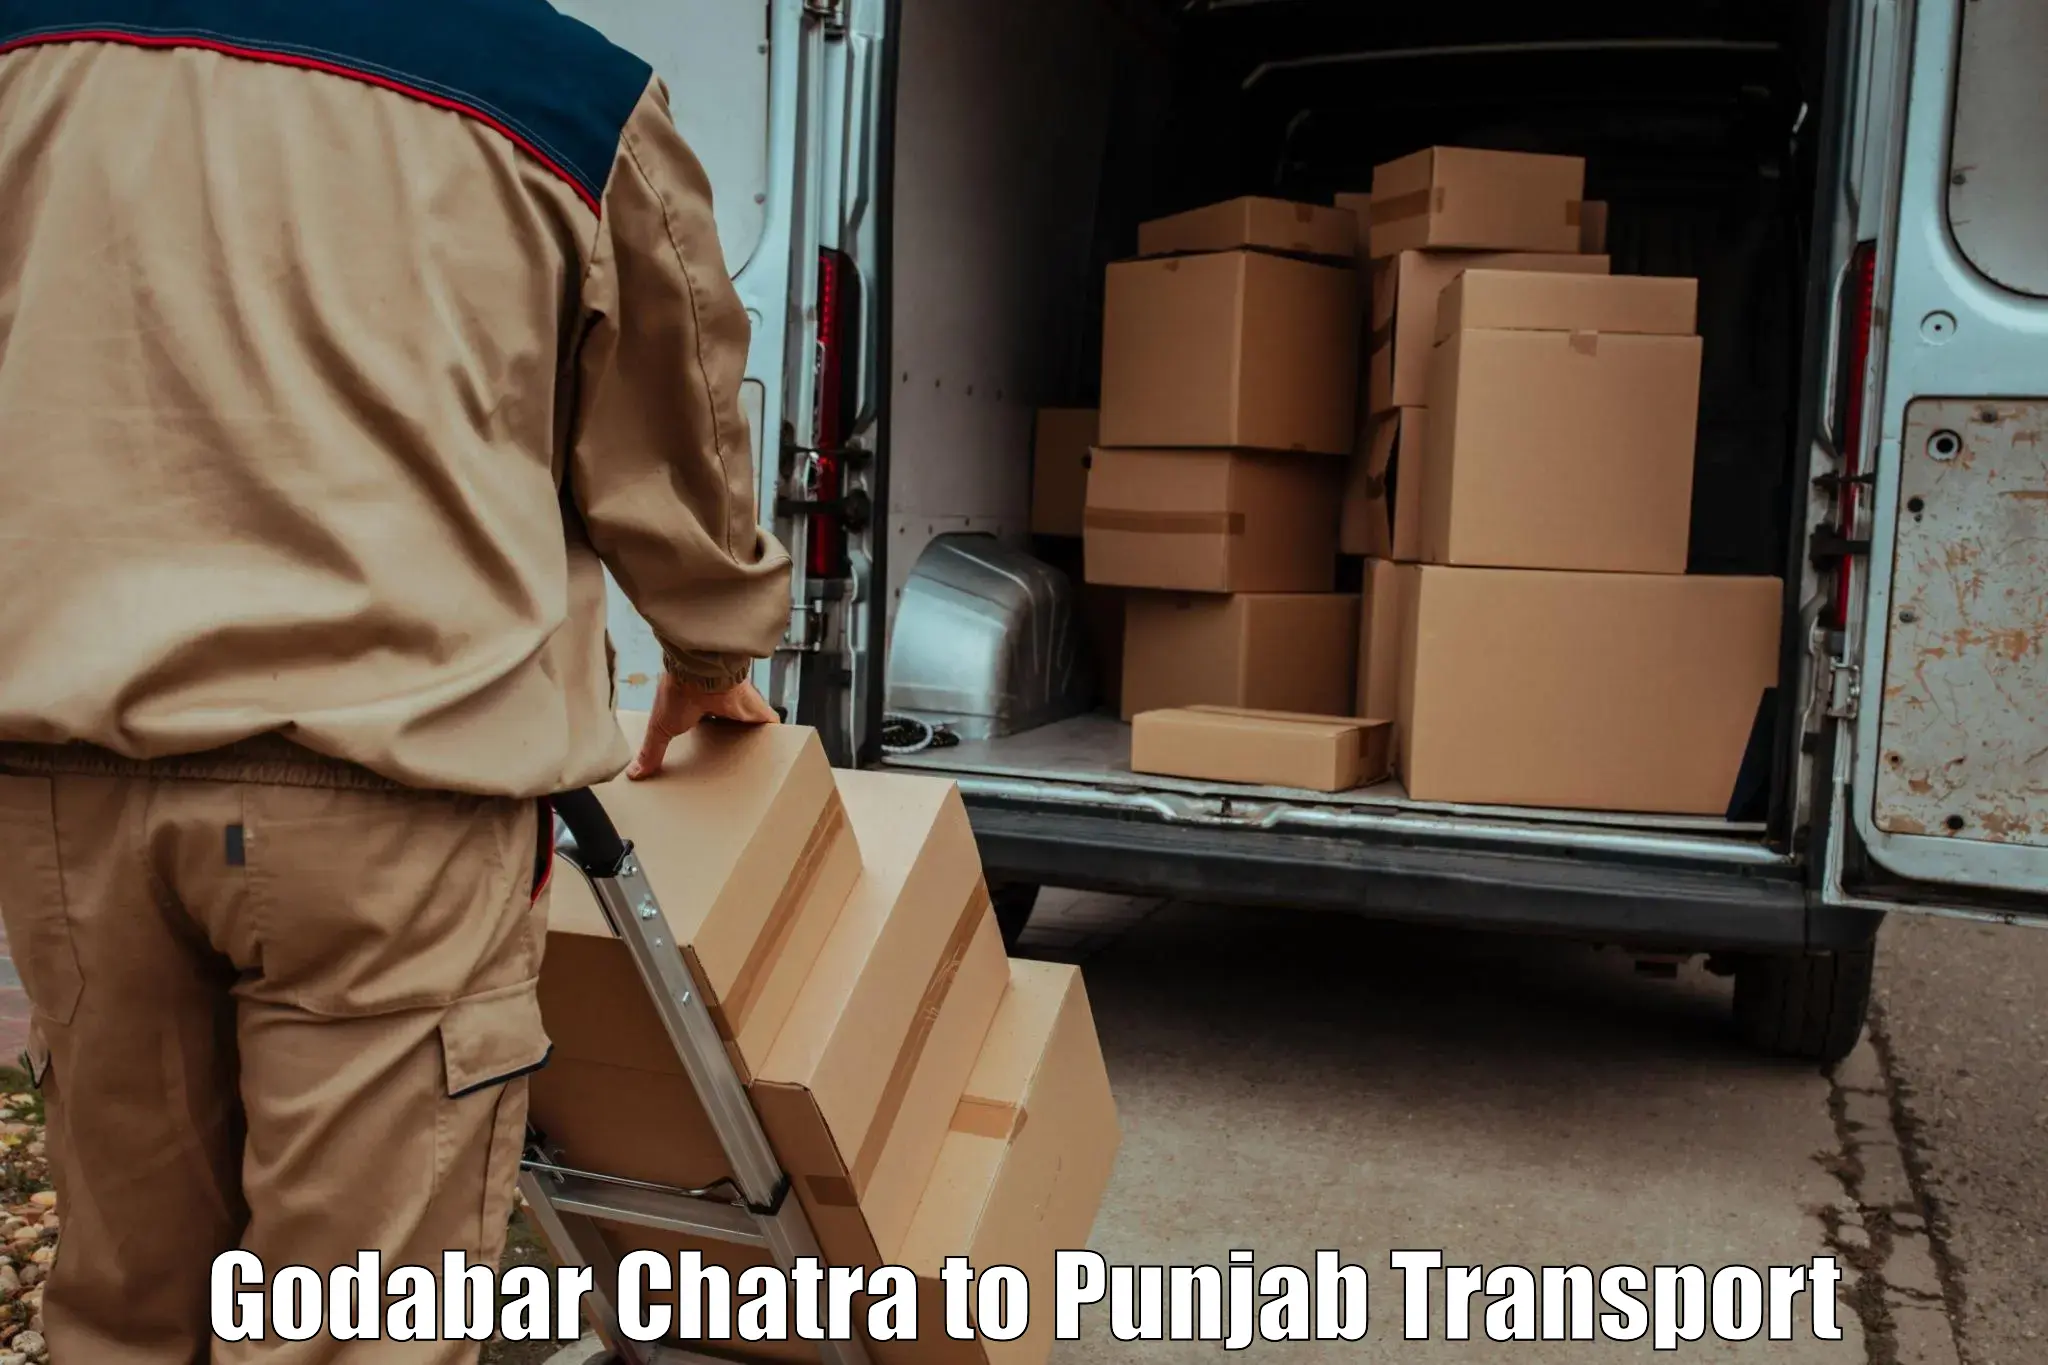 Cargo transport services Godabar Chatra to Central University of Punjab Bathinda